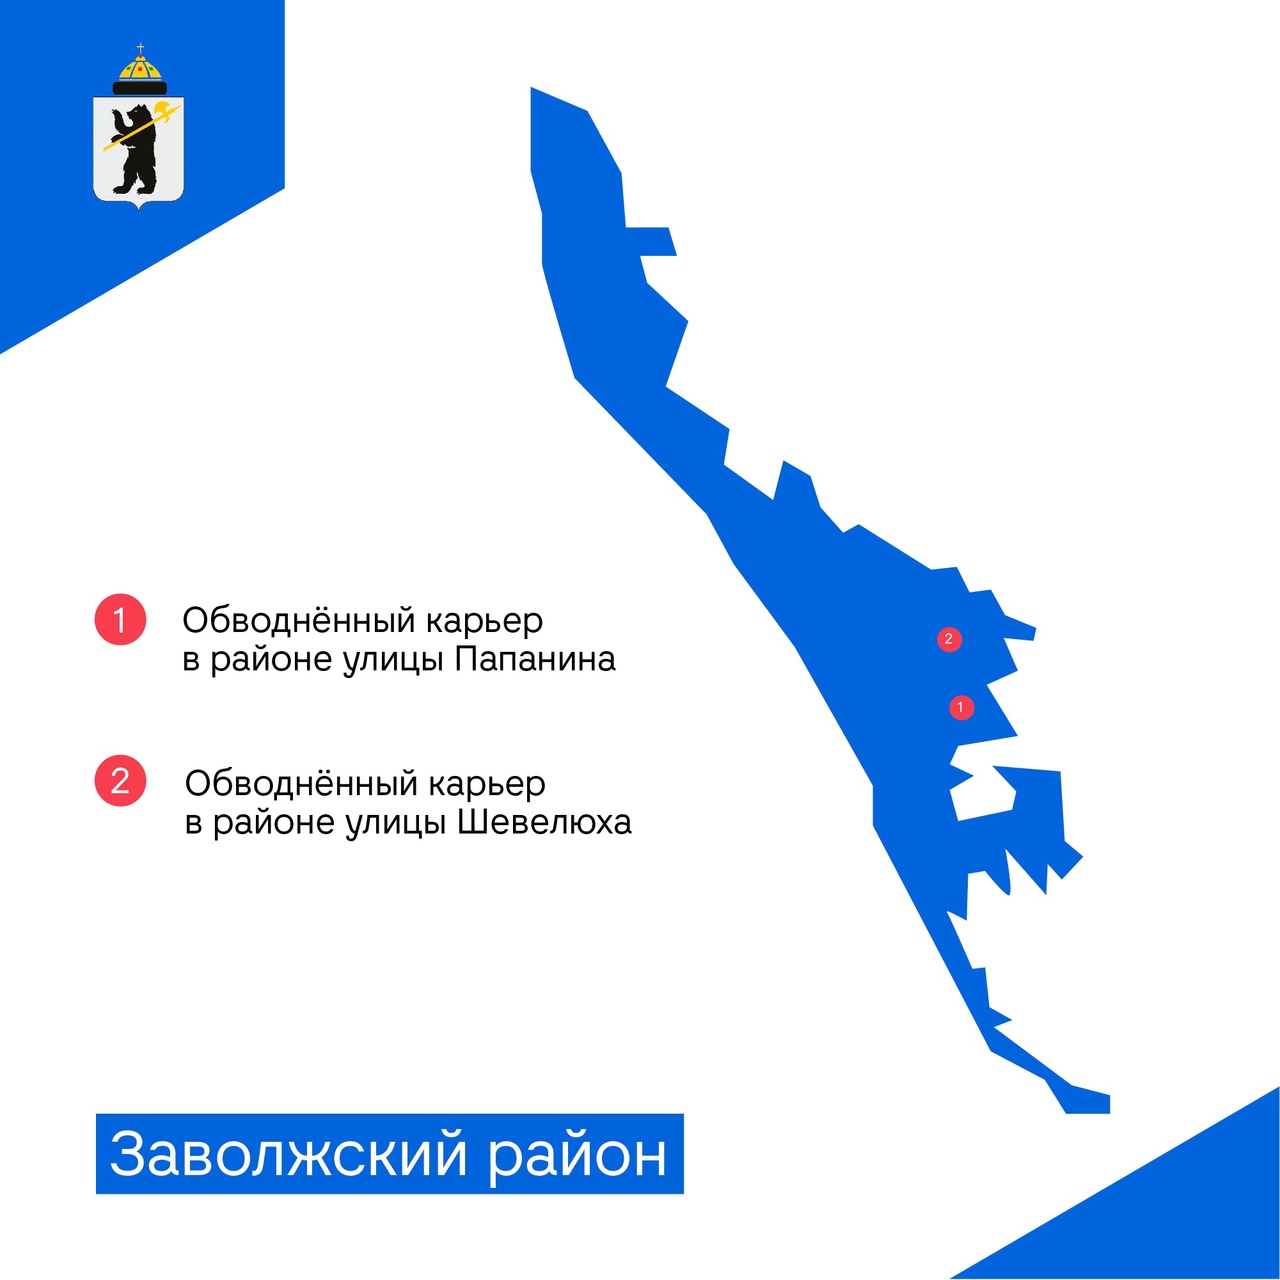 В Ярославле 13 потенциально опасных водных объектов: где они находятся